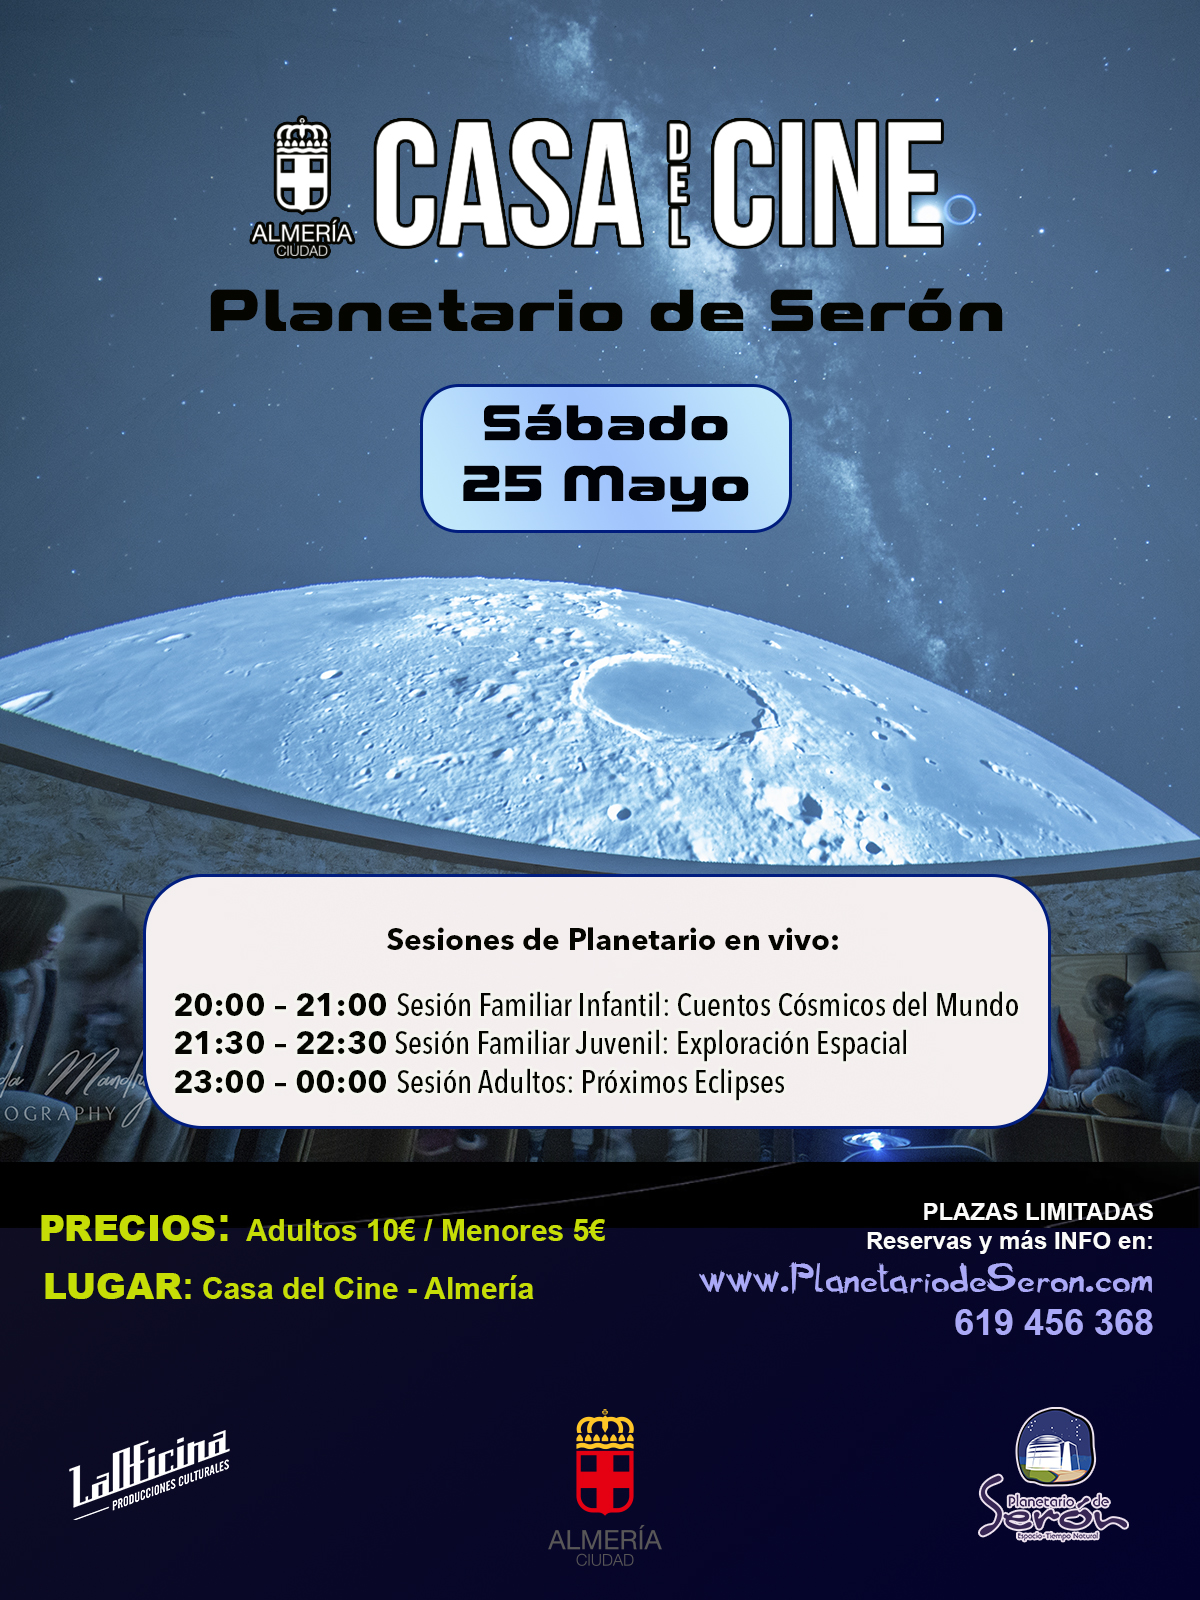 Planetario de Seron Almeria en la Casa del Cine